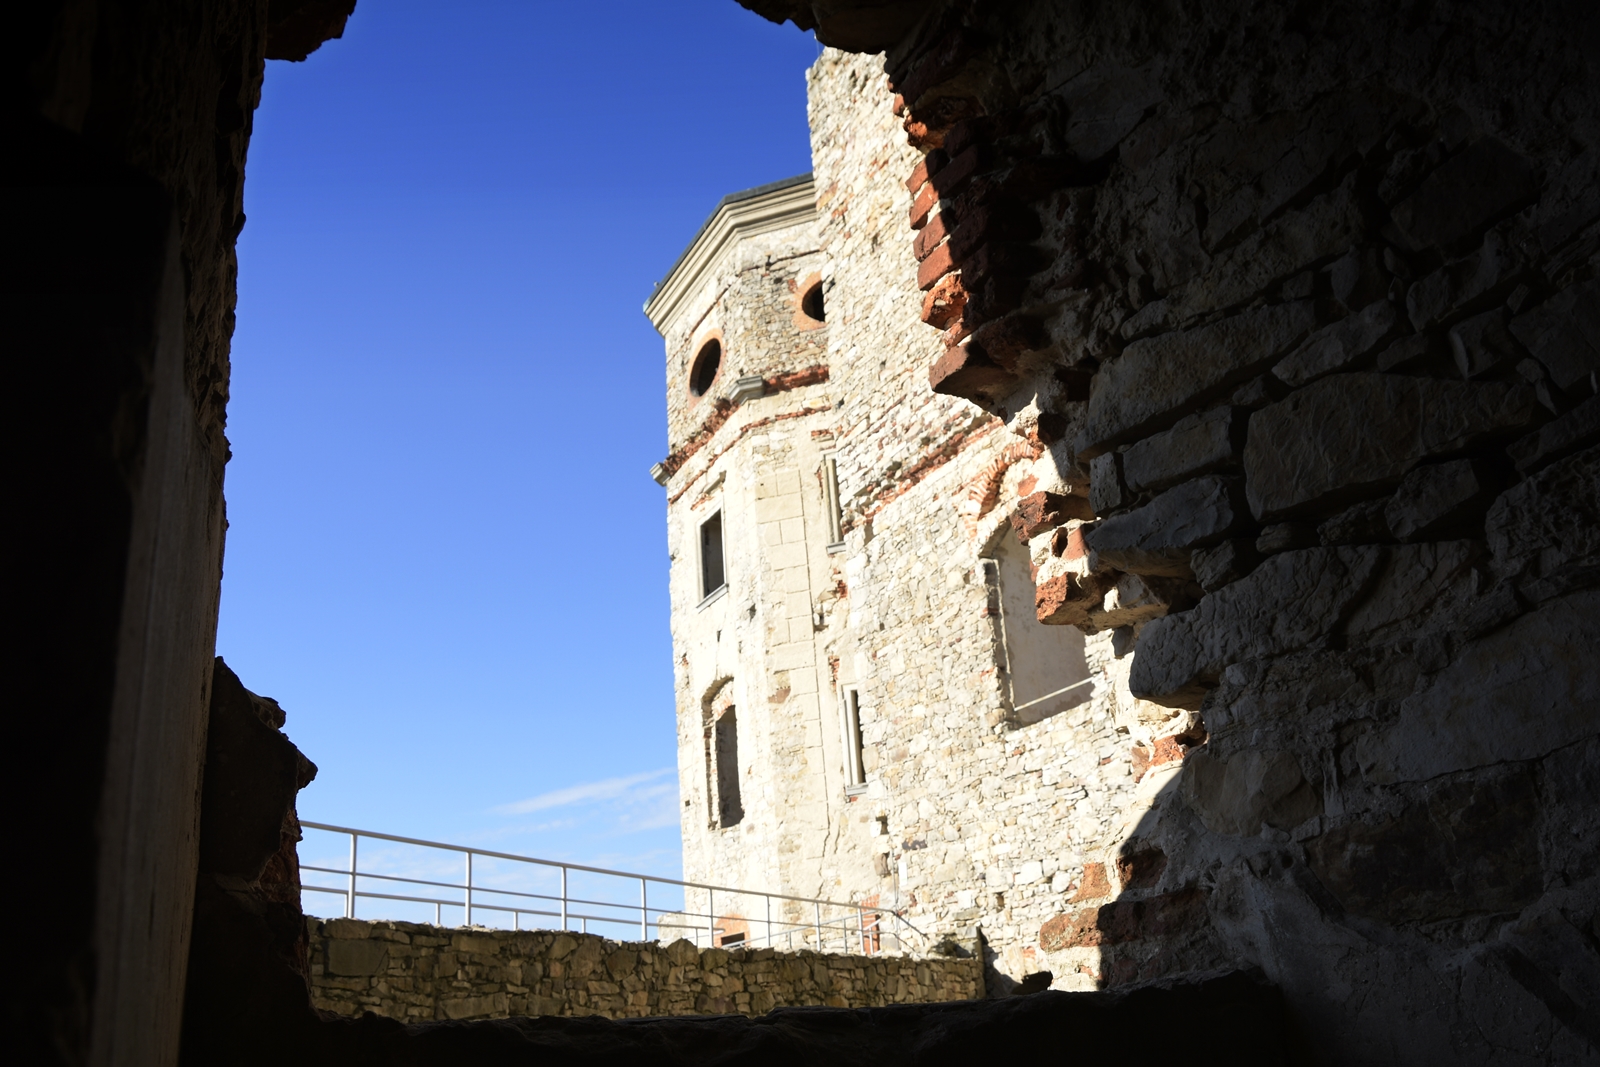 Wieża zamku Krzyżtopór widziana przez zrujnowane okienko świętokrzyskiego zamku.